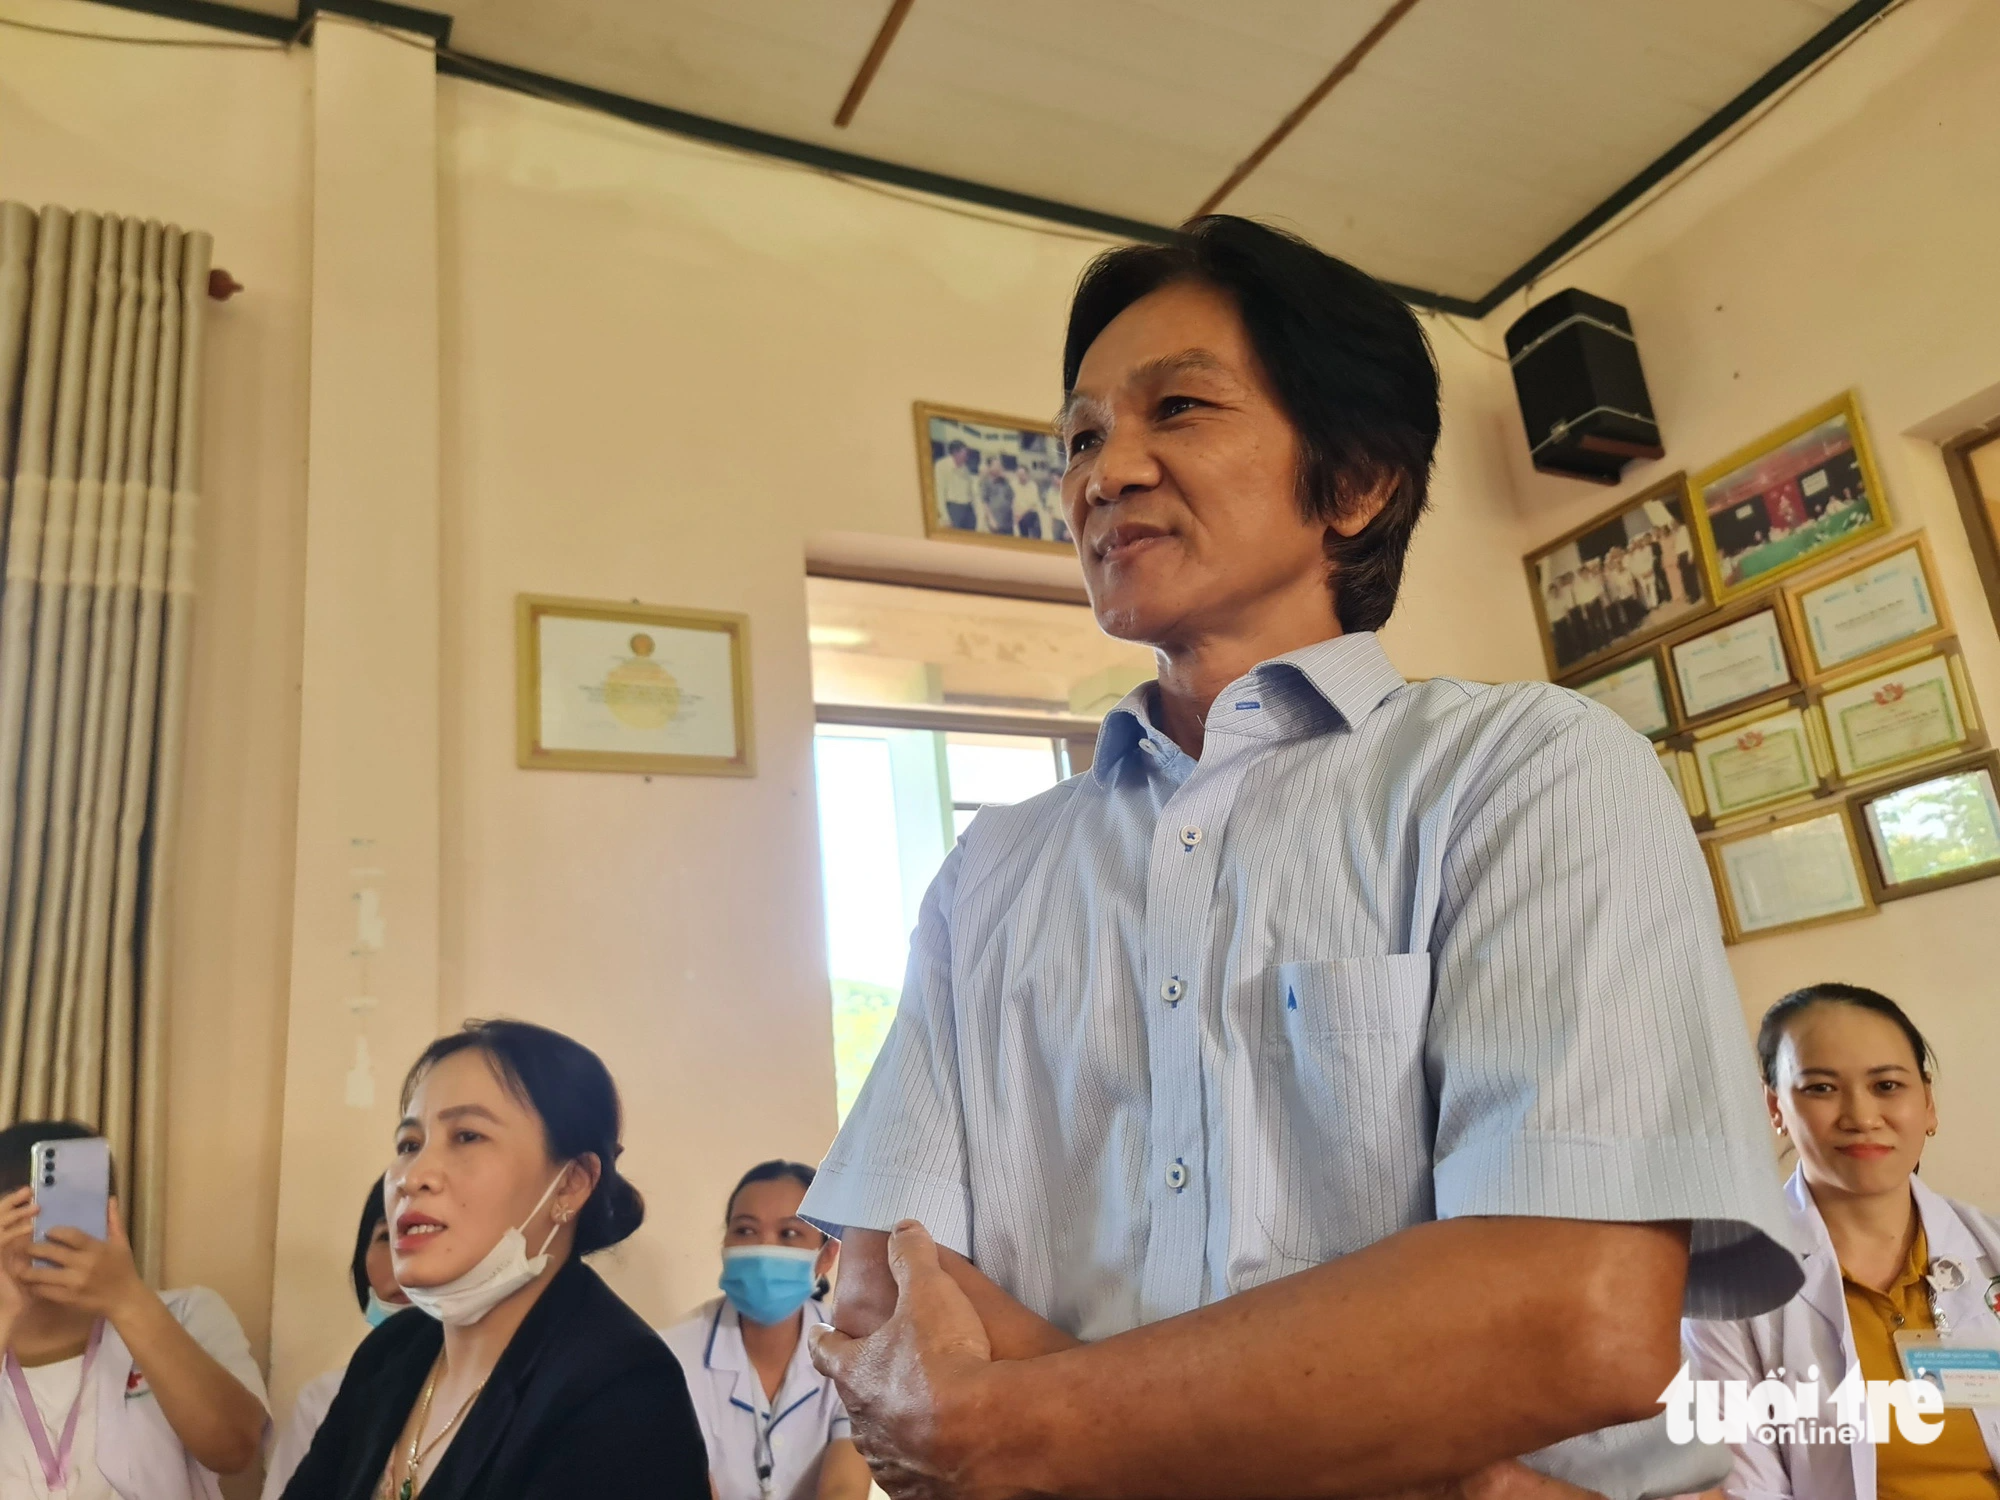 Bác sĩ Nguyễn Văn Sơn bảo rất mừng khi nghe Nghị định phụ cấp nghề cho y bác sĩ chống dịch, giờ ông rất buồn - Ảnh: TRẦN MAI